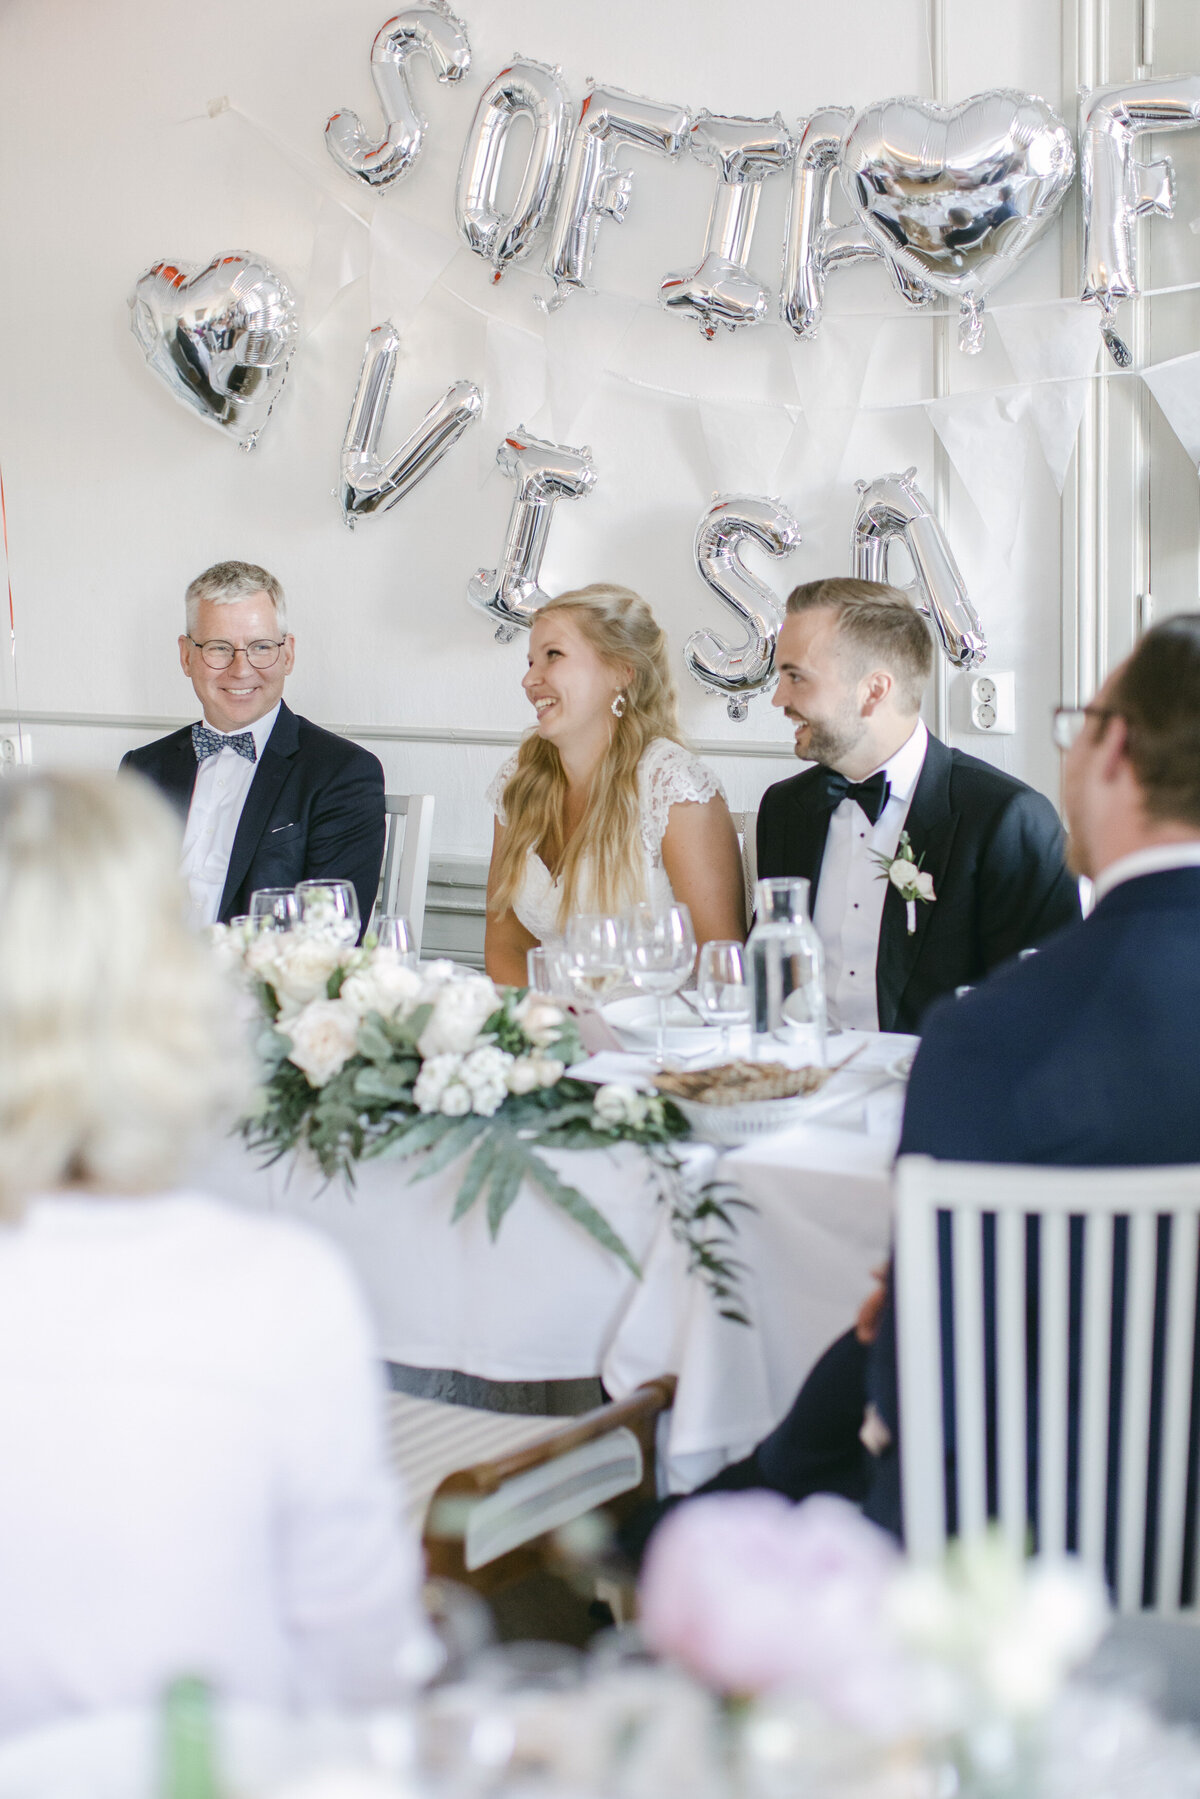 Bröllopspar skrattar under talen på bröllopsmiddagen på Schenströmska